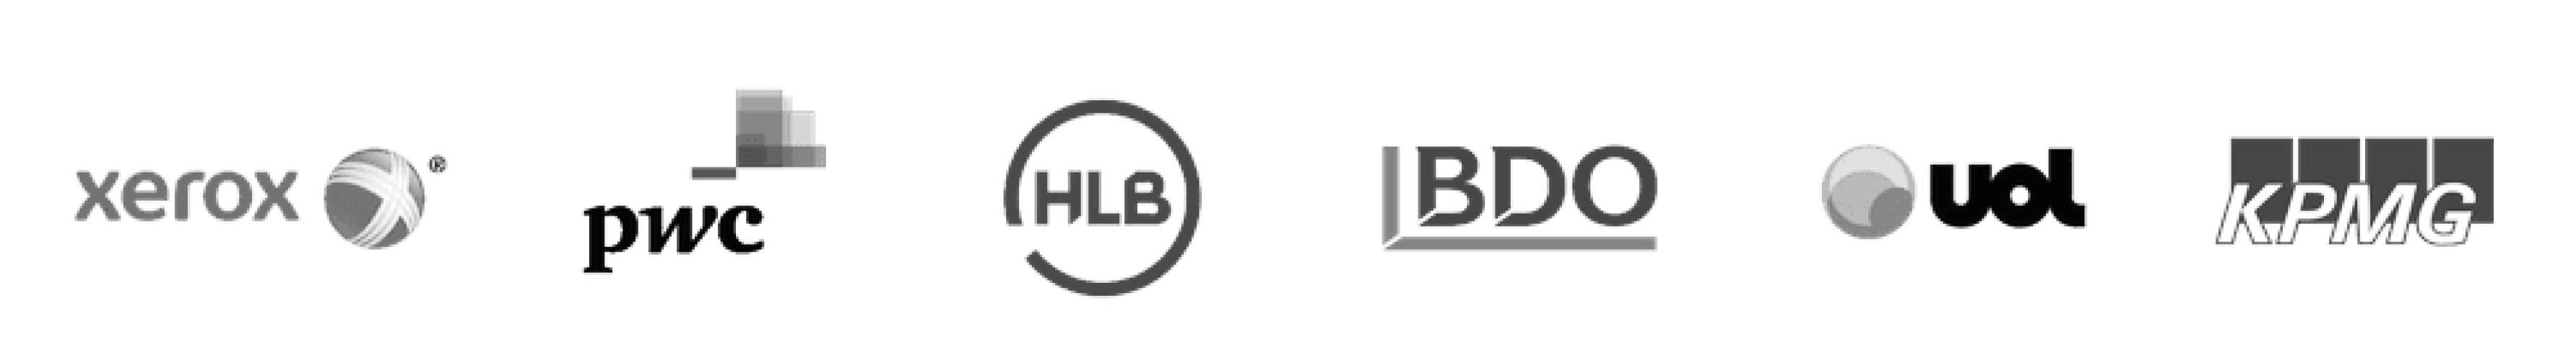 Logos-2